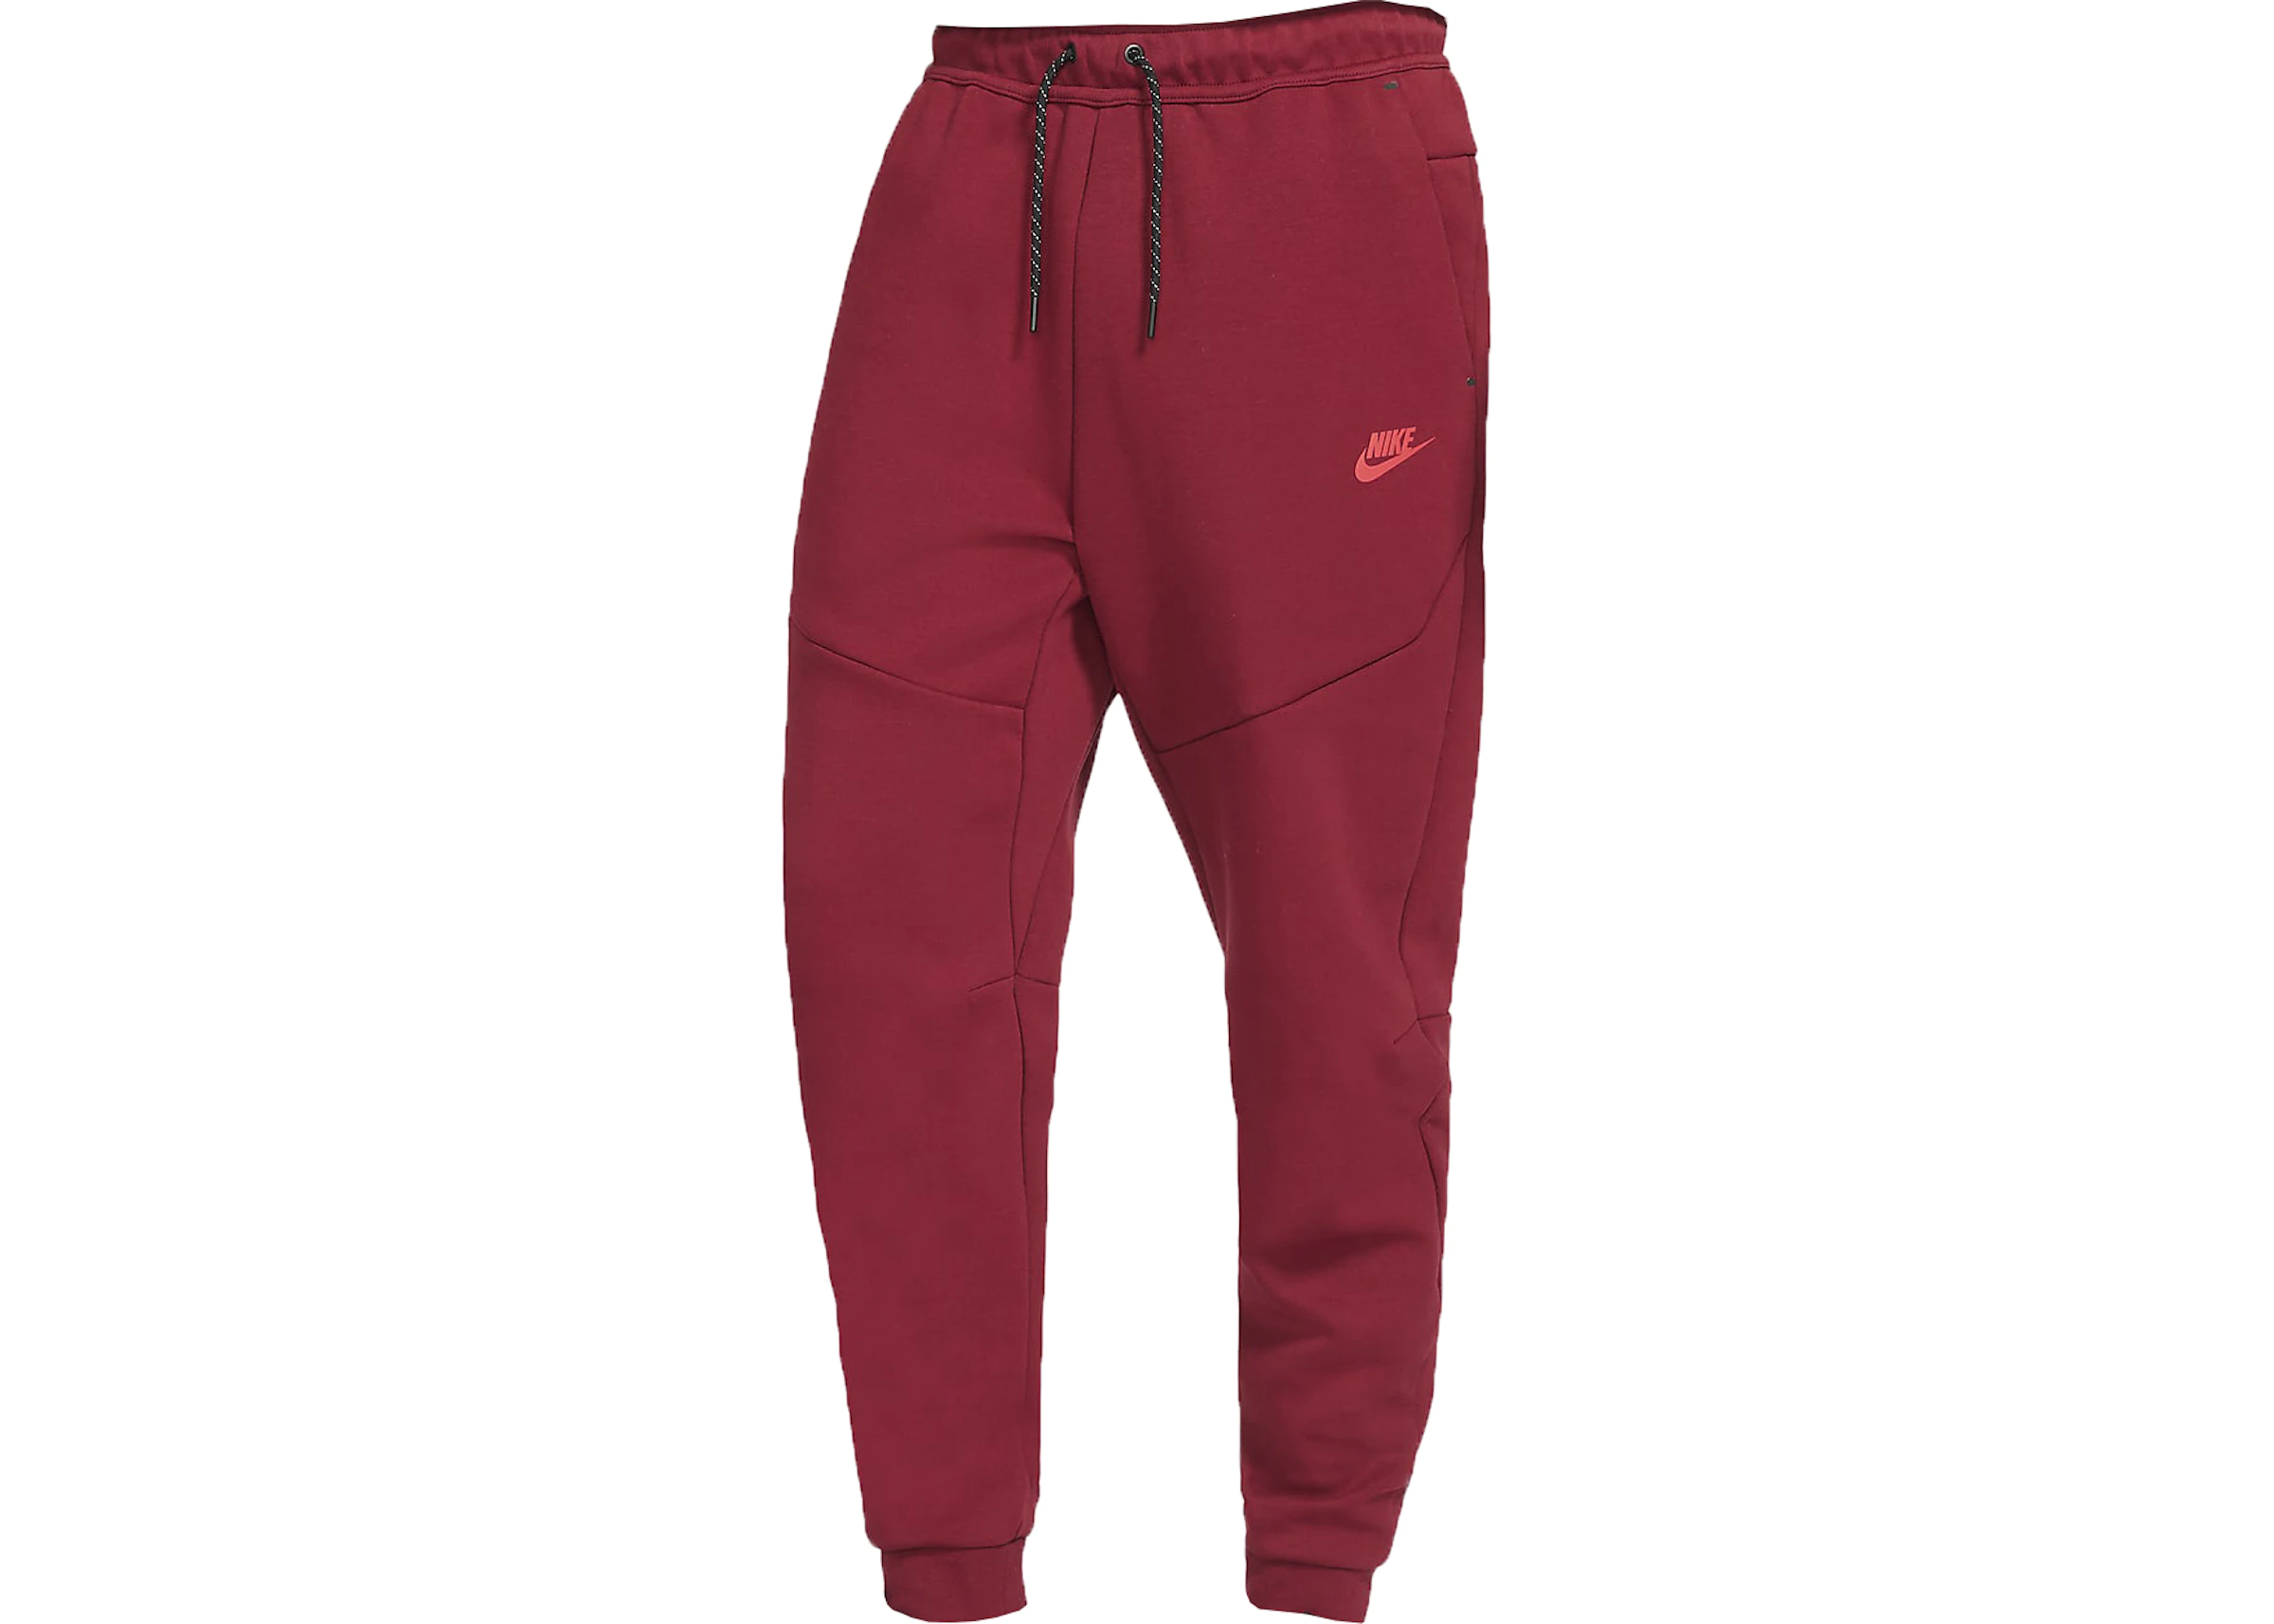 woordenboek Kalmte Peru Nike Sportswear Tech Fleece Jogger Pants Team Red/Dark Maroon - US